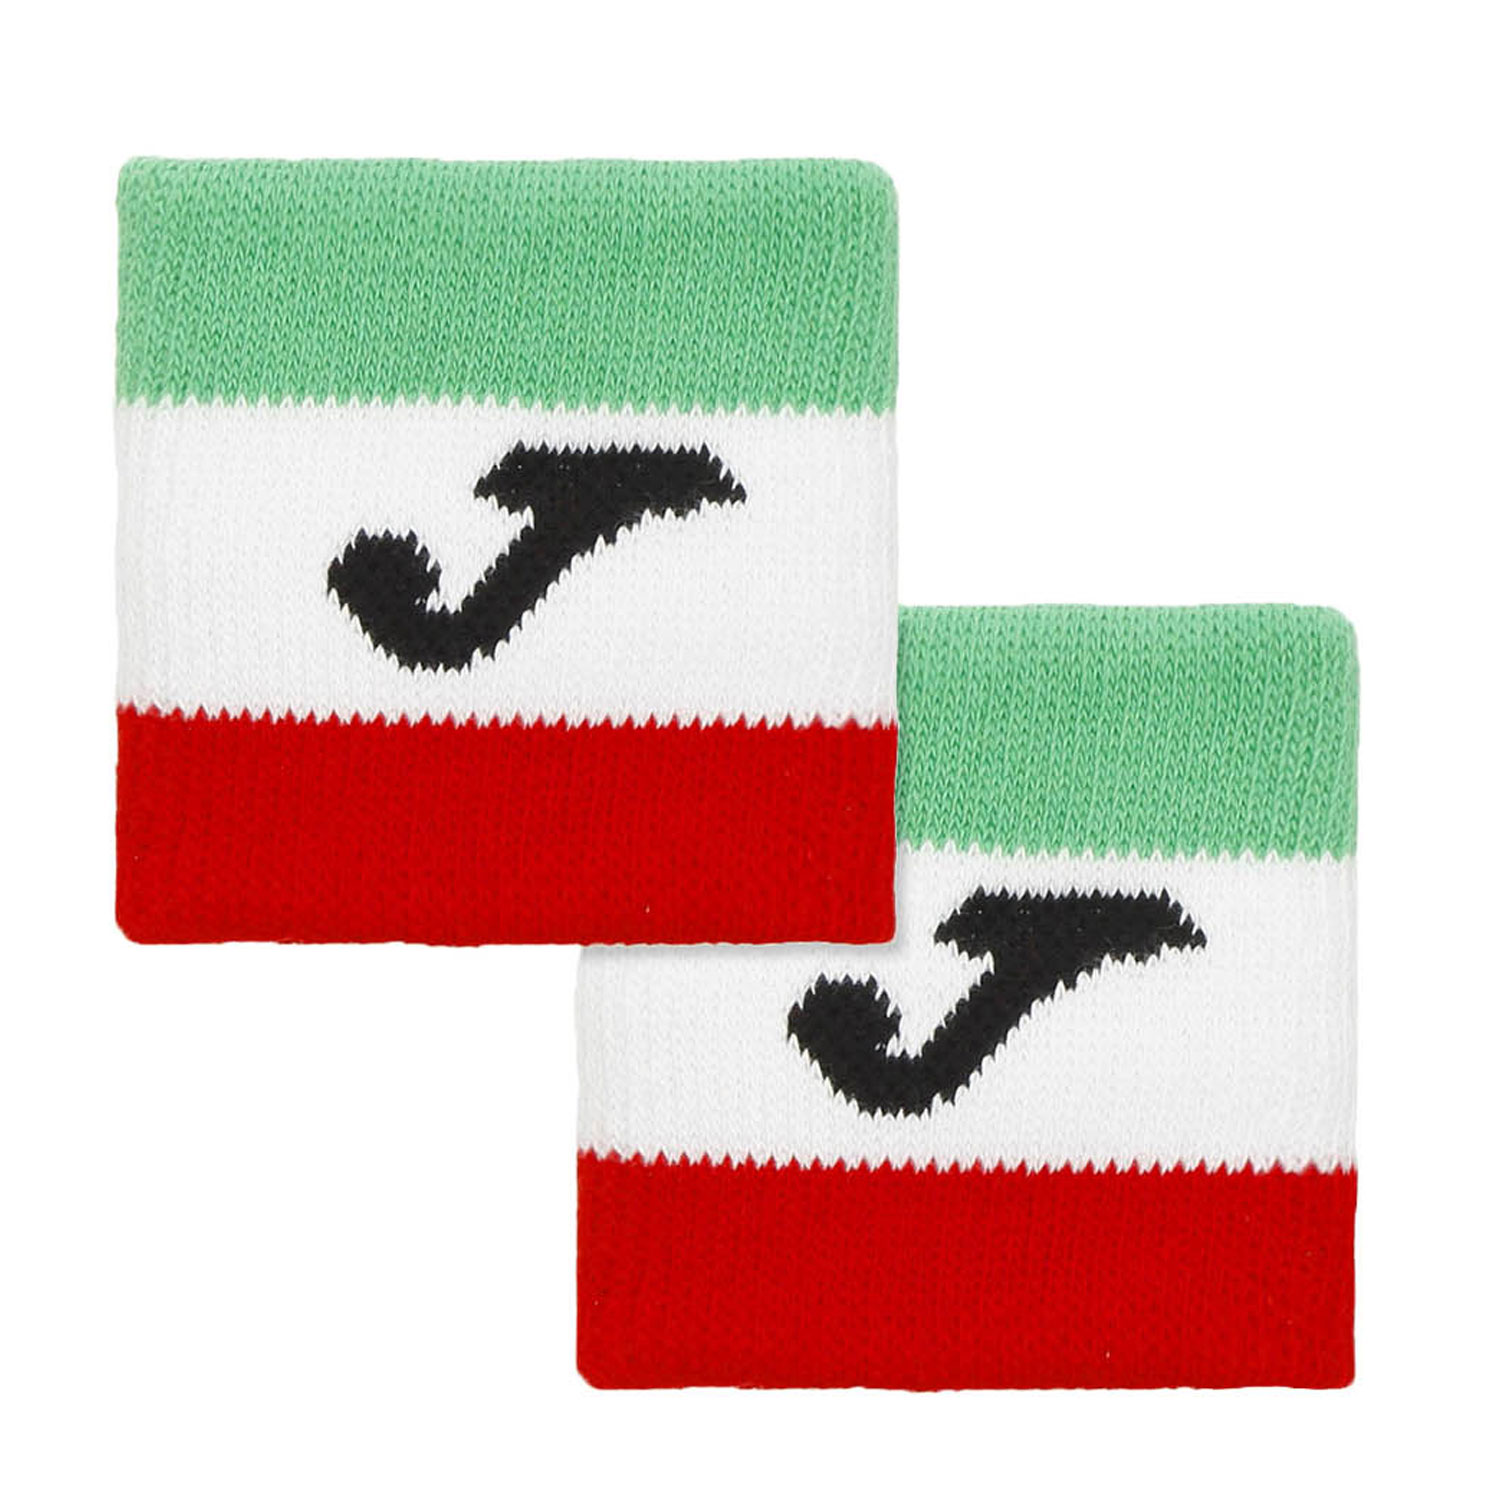 Joma FIT Polsini Corti - Green/White/Red